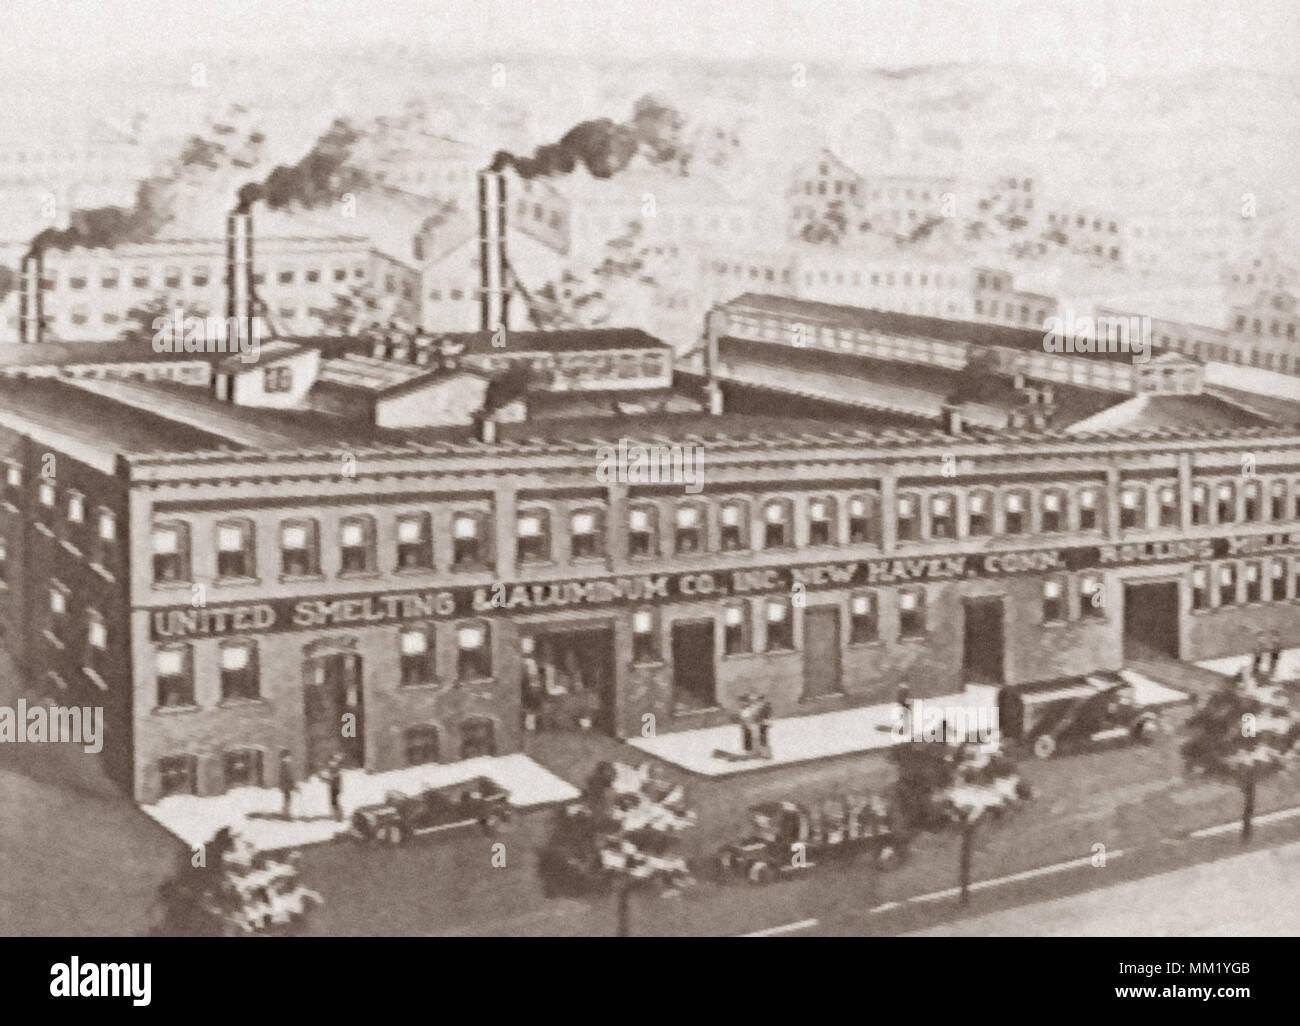 United Smelting & Aluminum Co. New Haven. 1919 Stock Photo